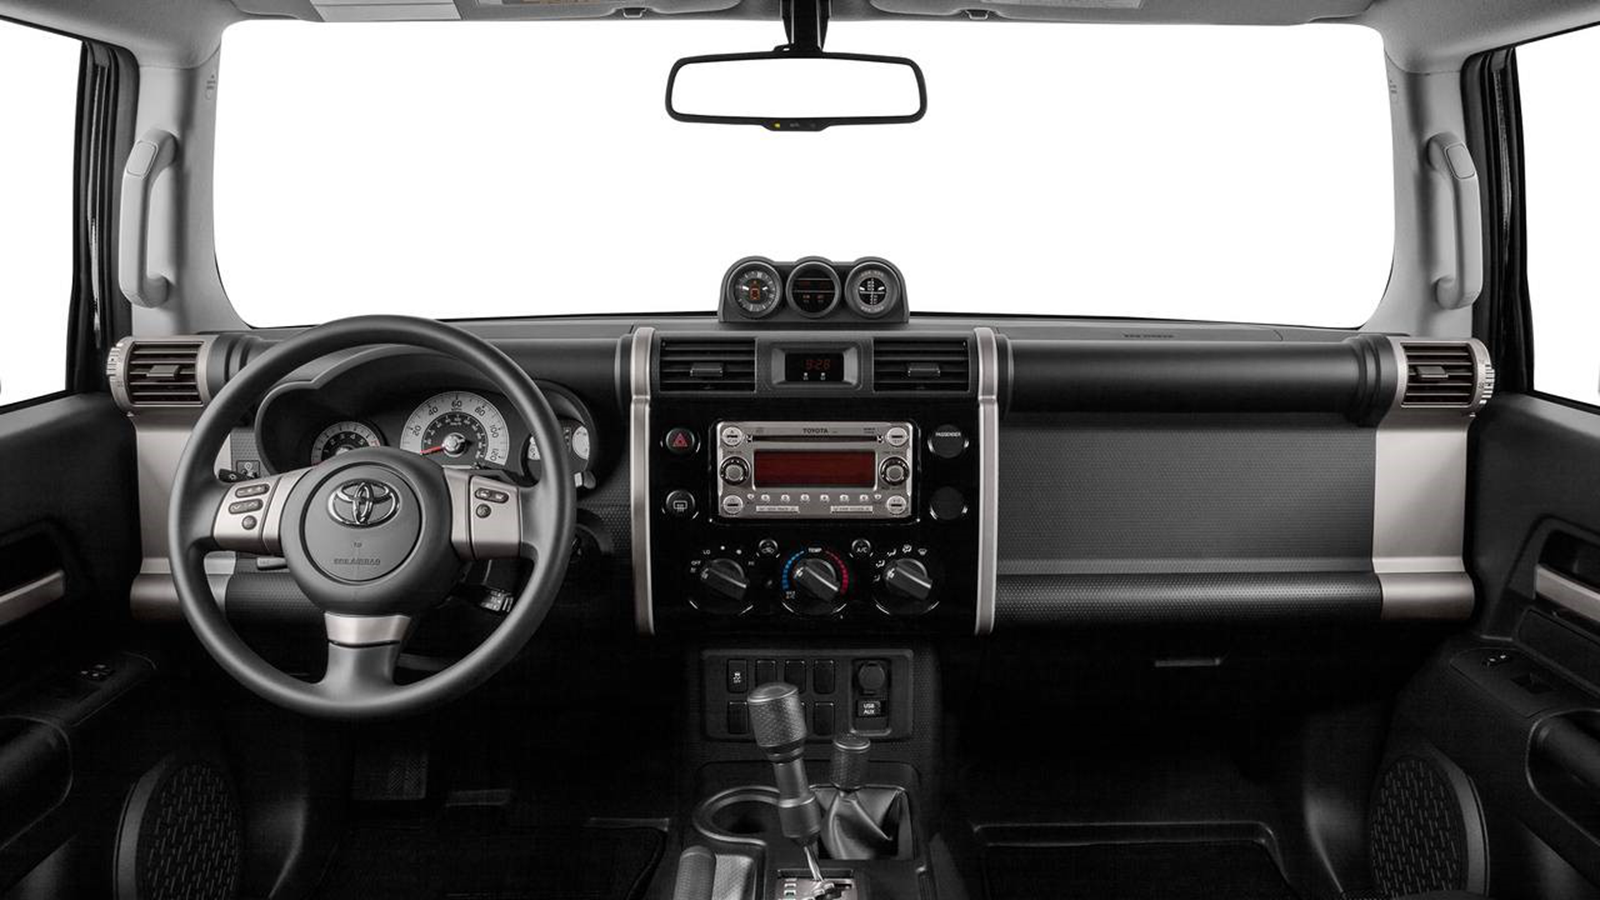 2014 Toyota FJ Cruiser 4.0L V6 Interior 001